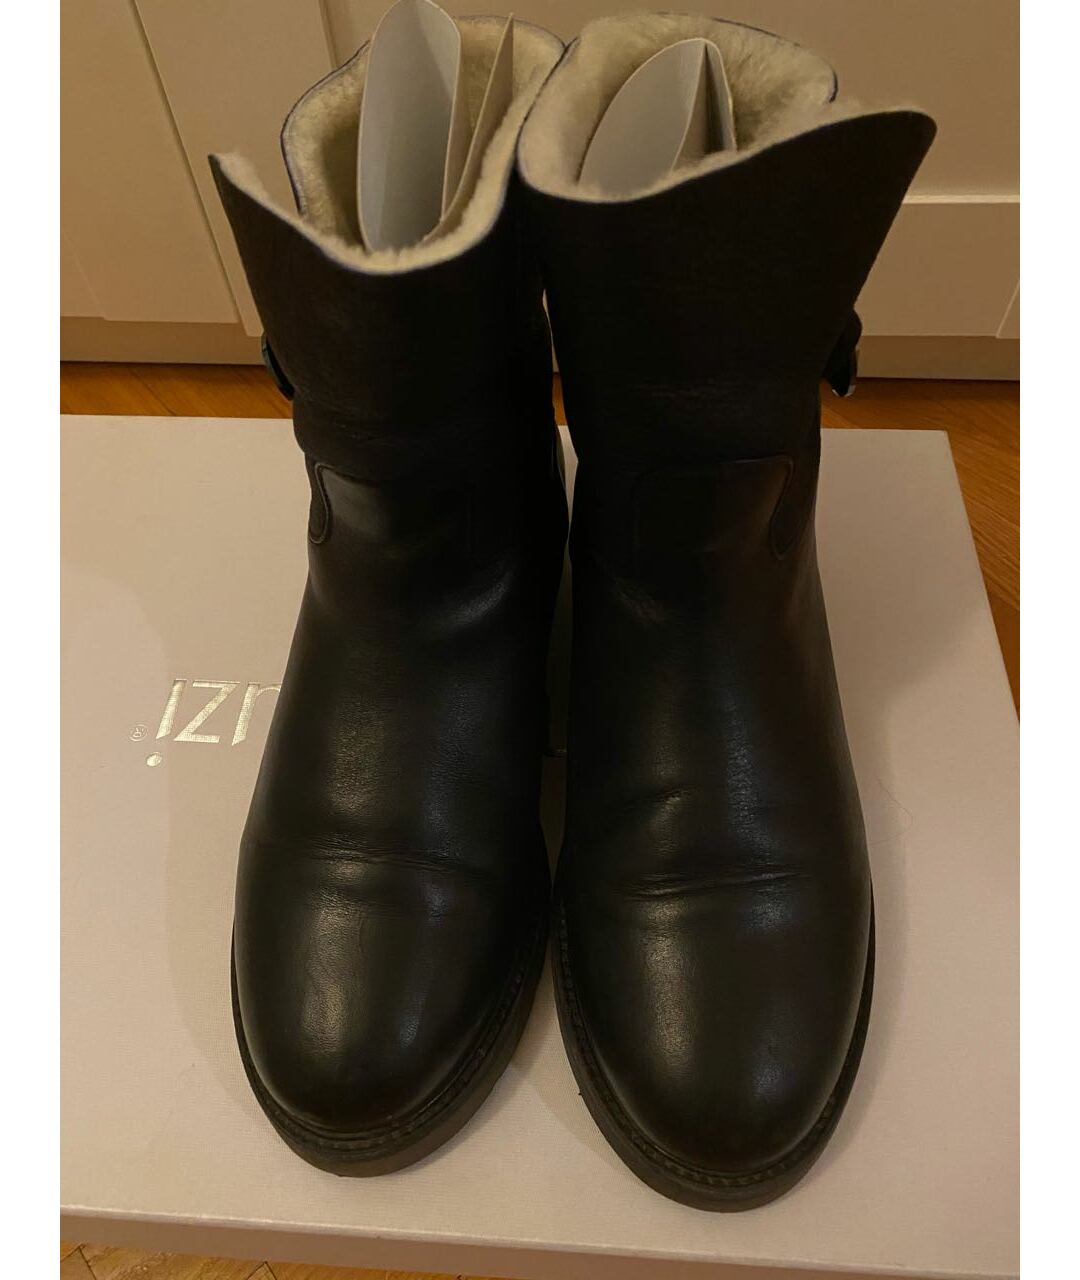 NANDO MUZI Черные кожаные ботинки, фото 3